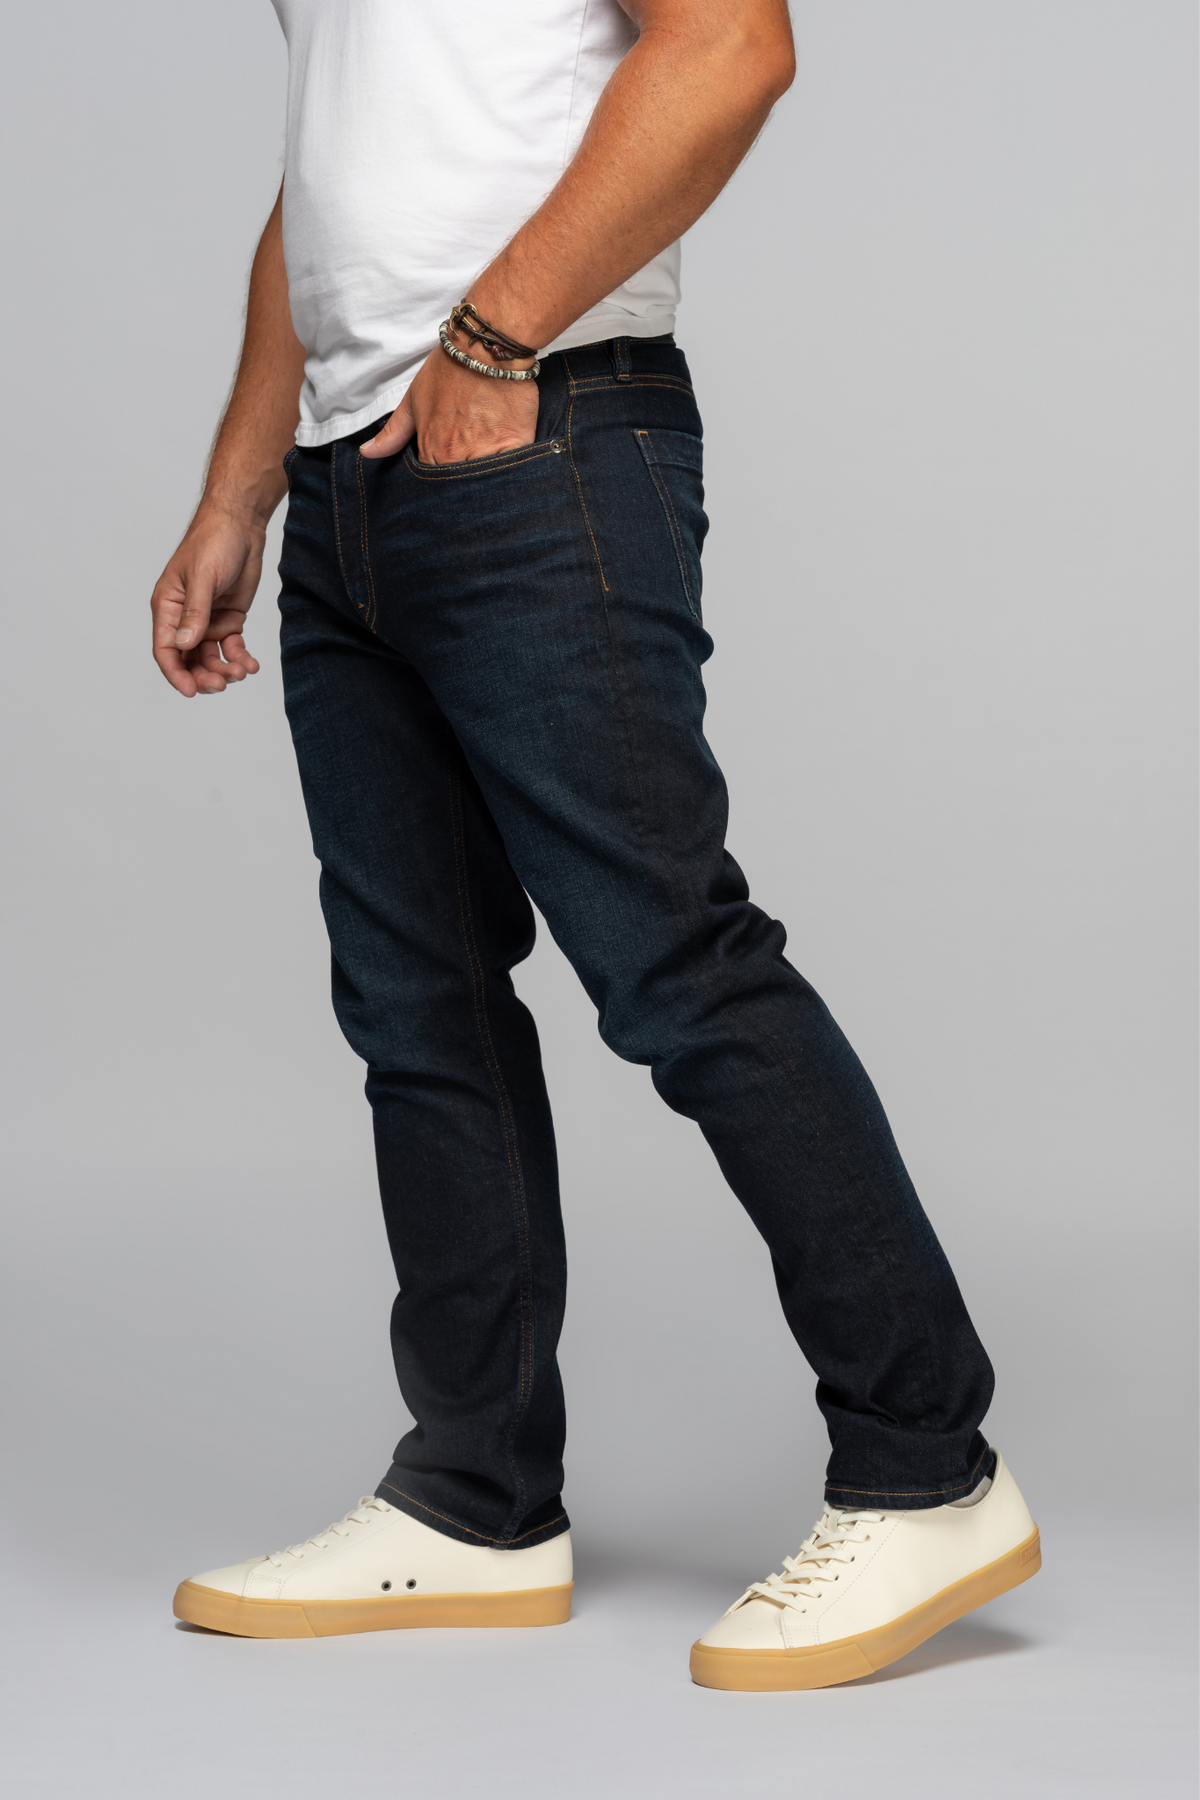 Sharp Men's Slim Fit Jeans - Dark Indigo Wash Revtown